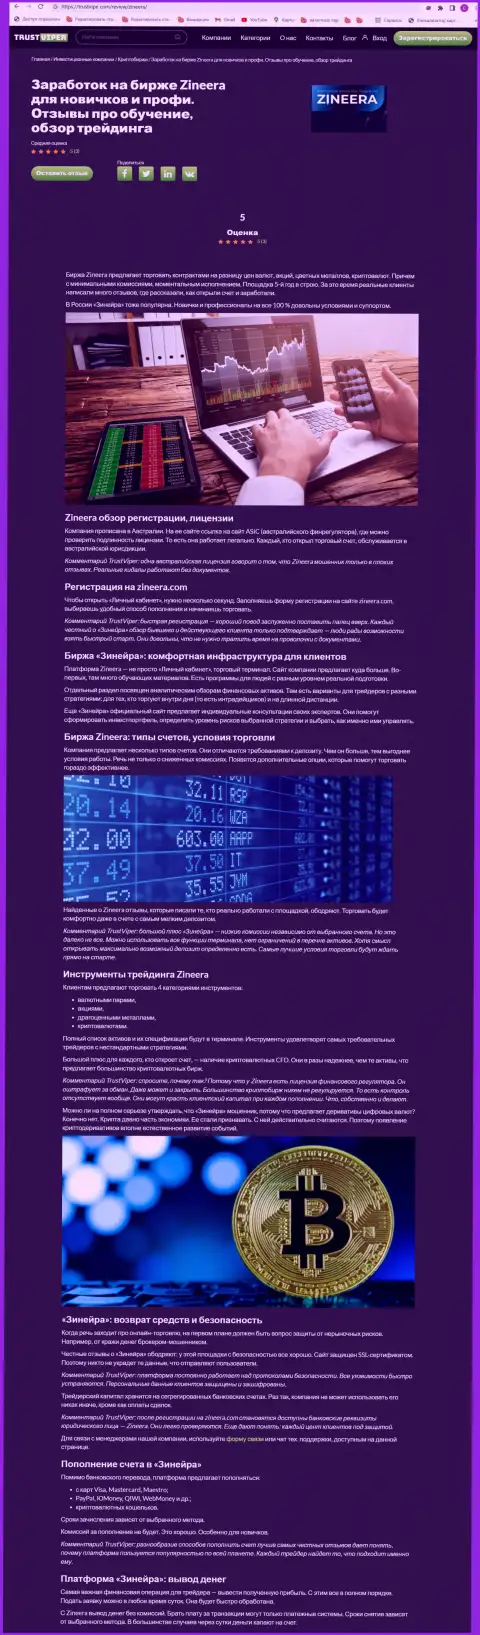 Обзор условий торгов криптовалютной брокерской компании Зинеера на информационном сервисе траствайпер ком